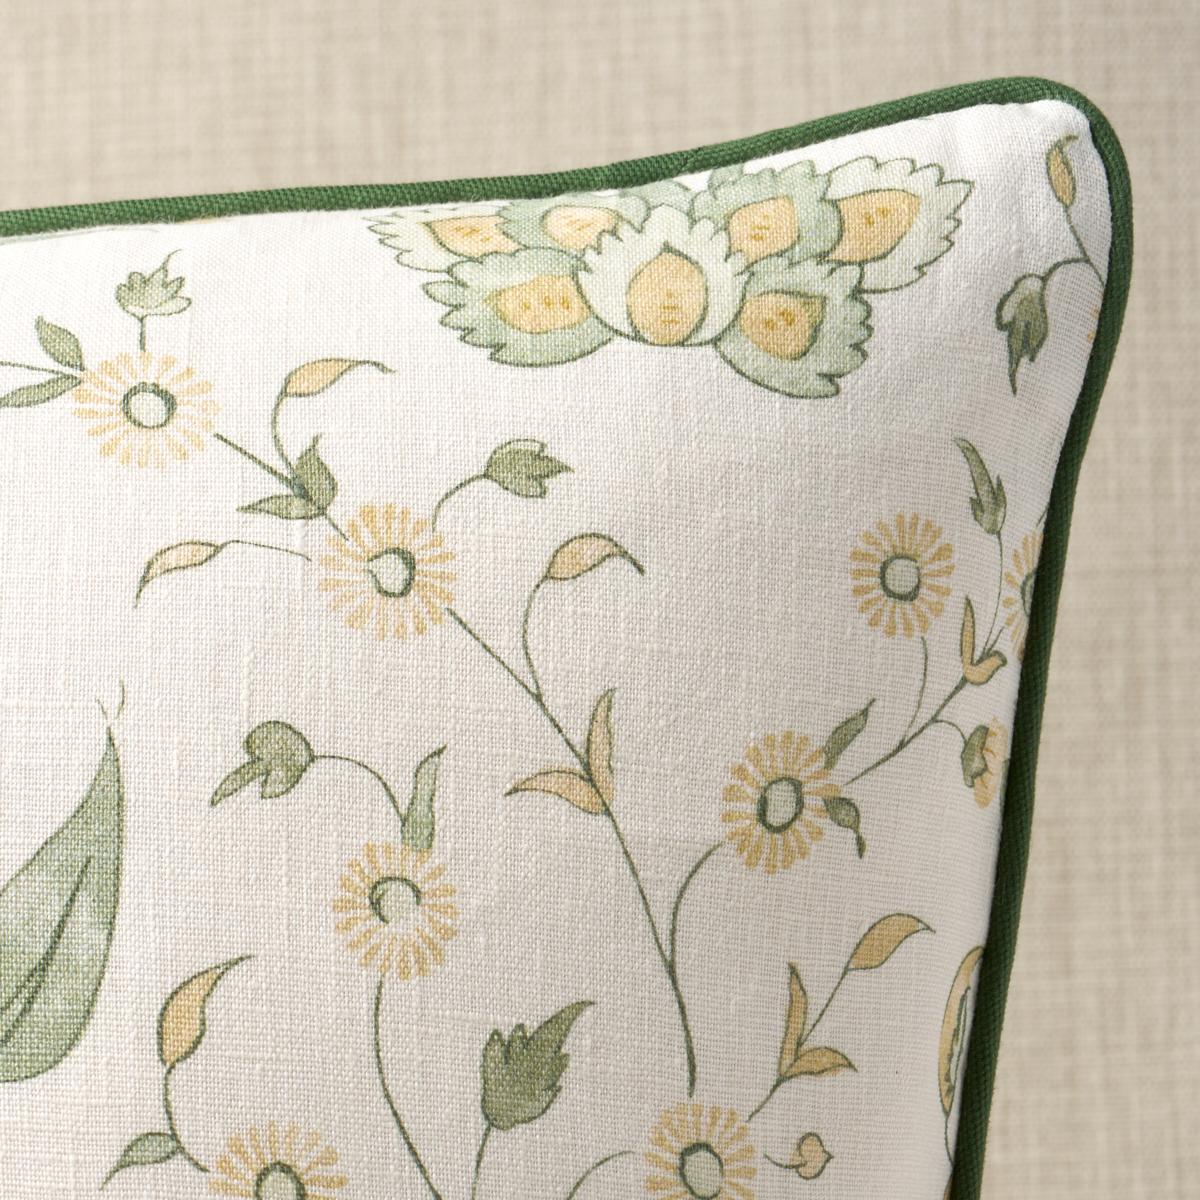 Cet oreiller est orné d'un motif floral Khilana. Ce motif floral simple et stylisé, inspiré des motifs traditionnels indiens, a l'aspect nuancé d'une impression à la main. L'oreiller est terminé par un passepoil en coton brossé Elliott. Contenu du